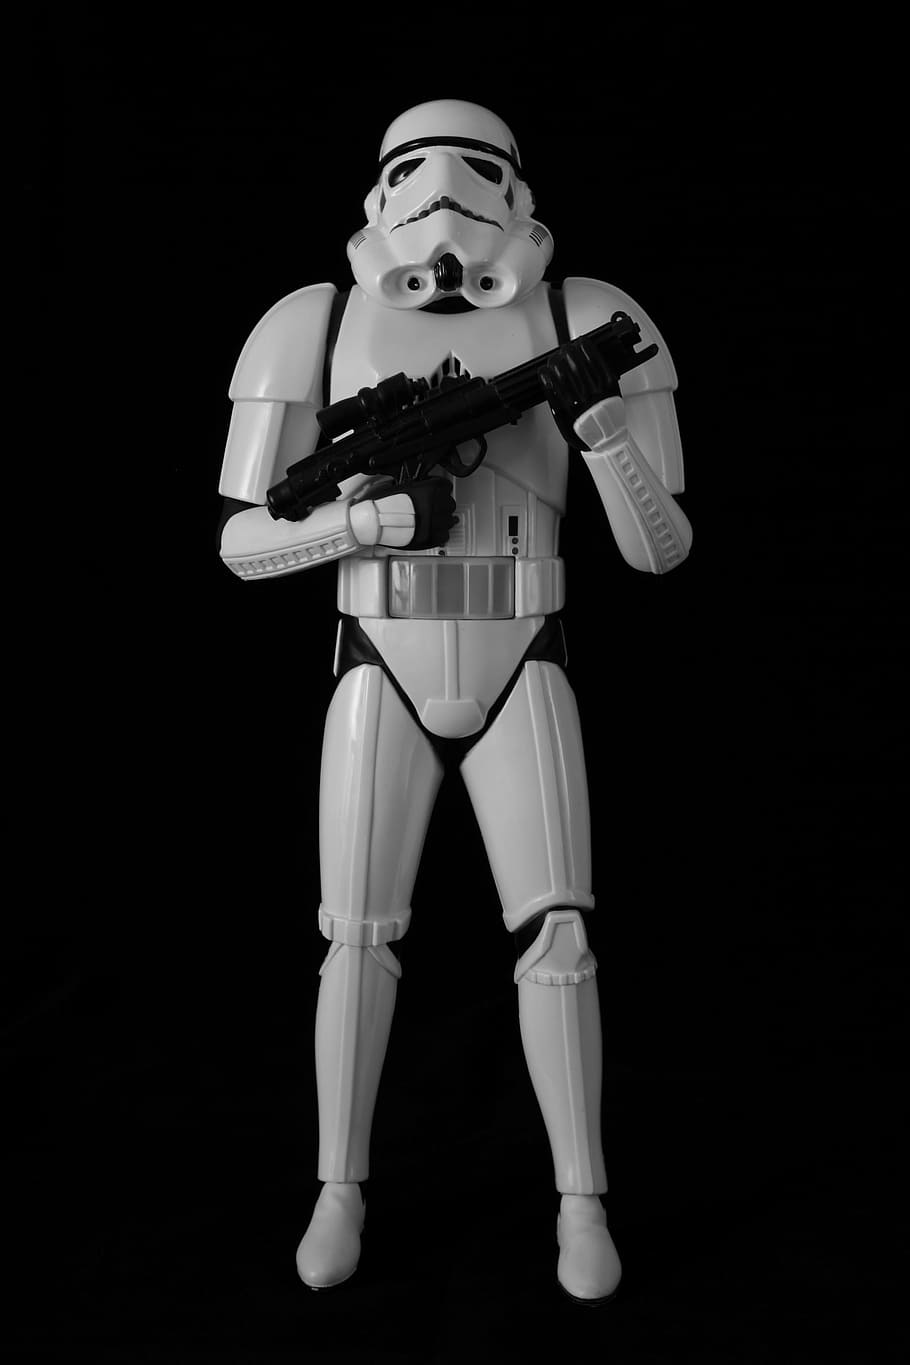 star, wars, stormtrooper, action, figurine, black, background, star wars, toys, models